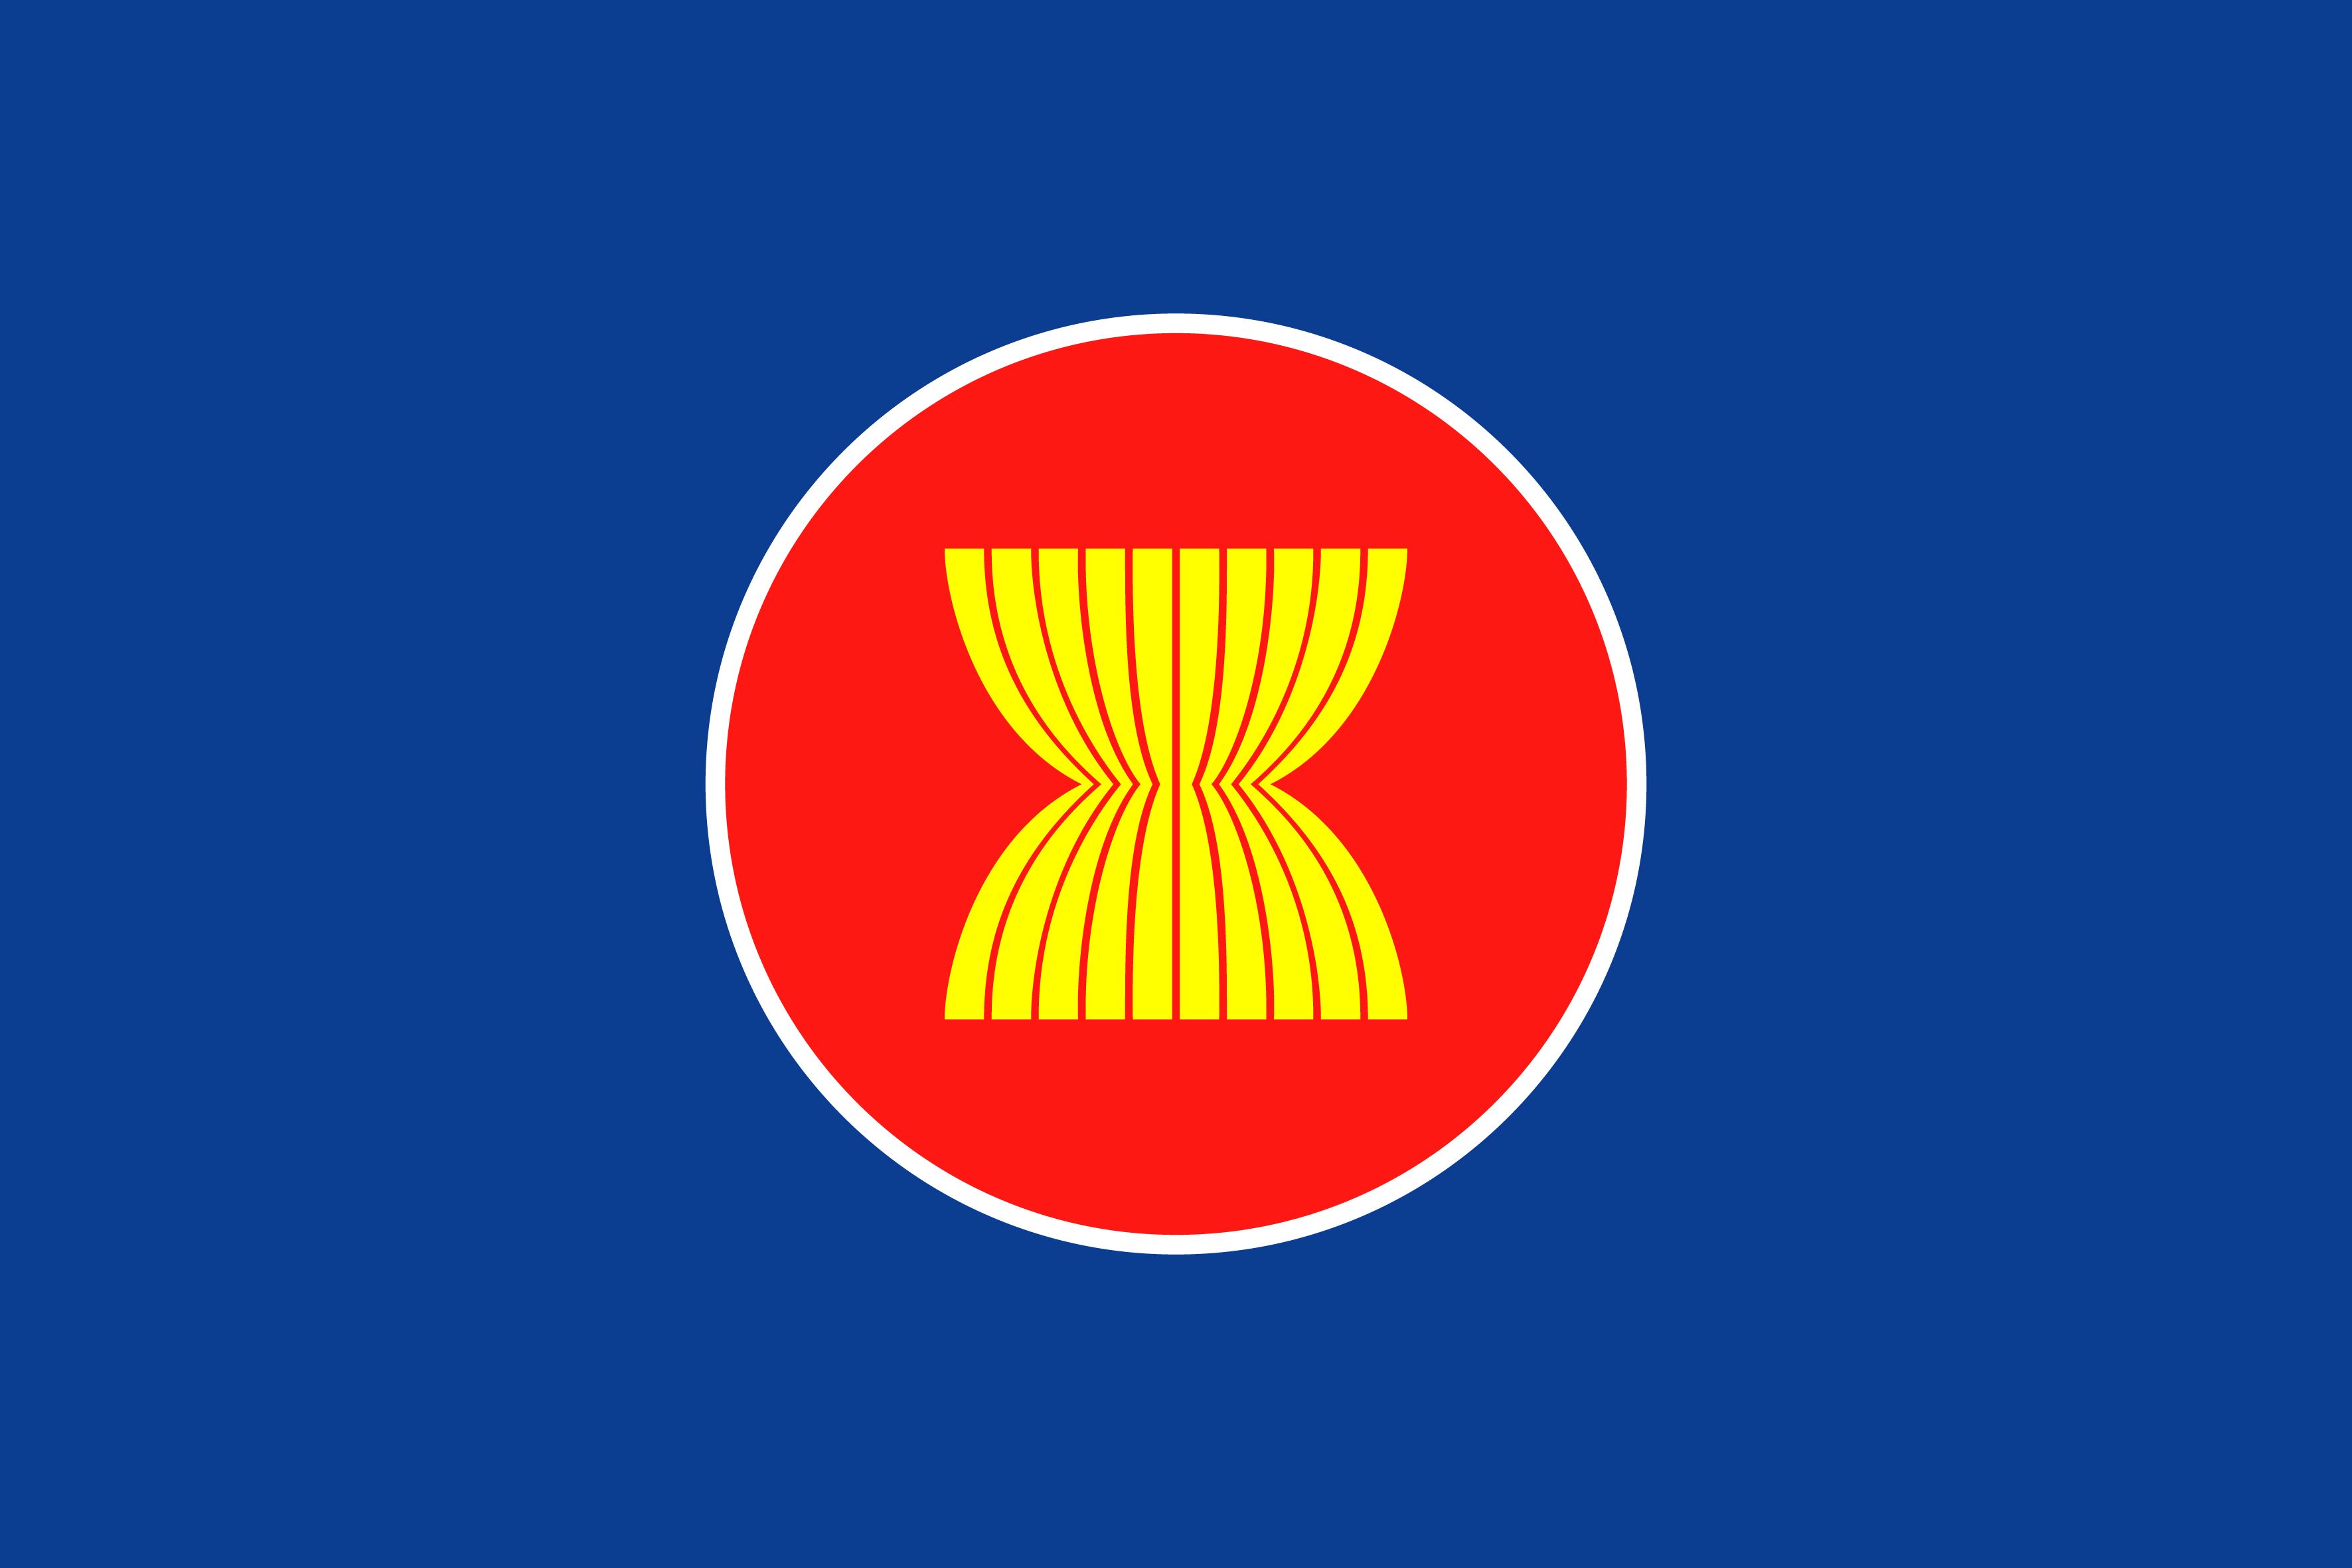 Tên các cơ quan trong bộ máy hoạt động của ASEAN hiện nay là gì? 
